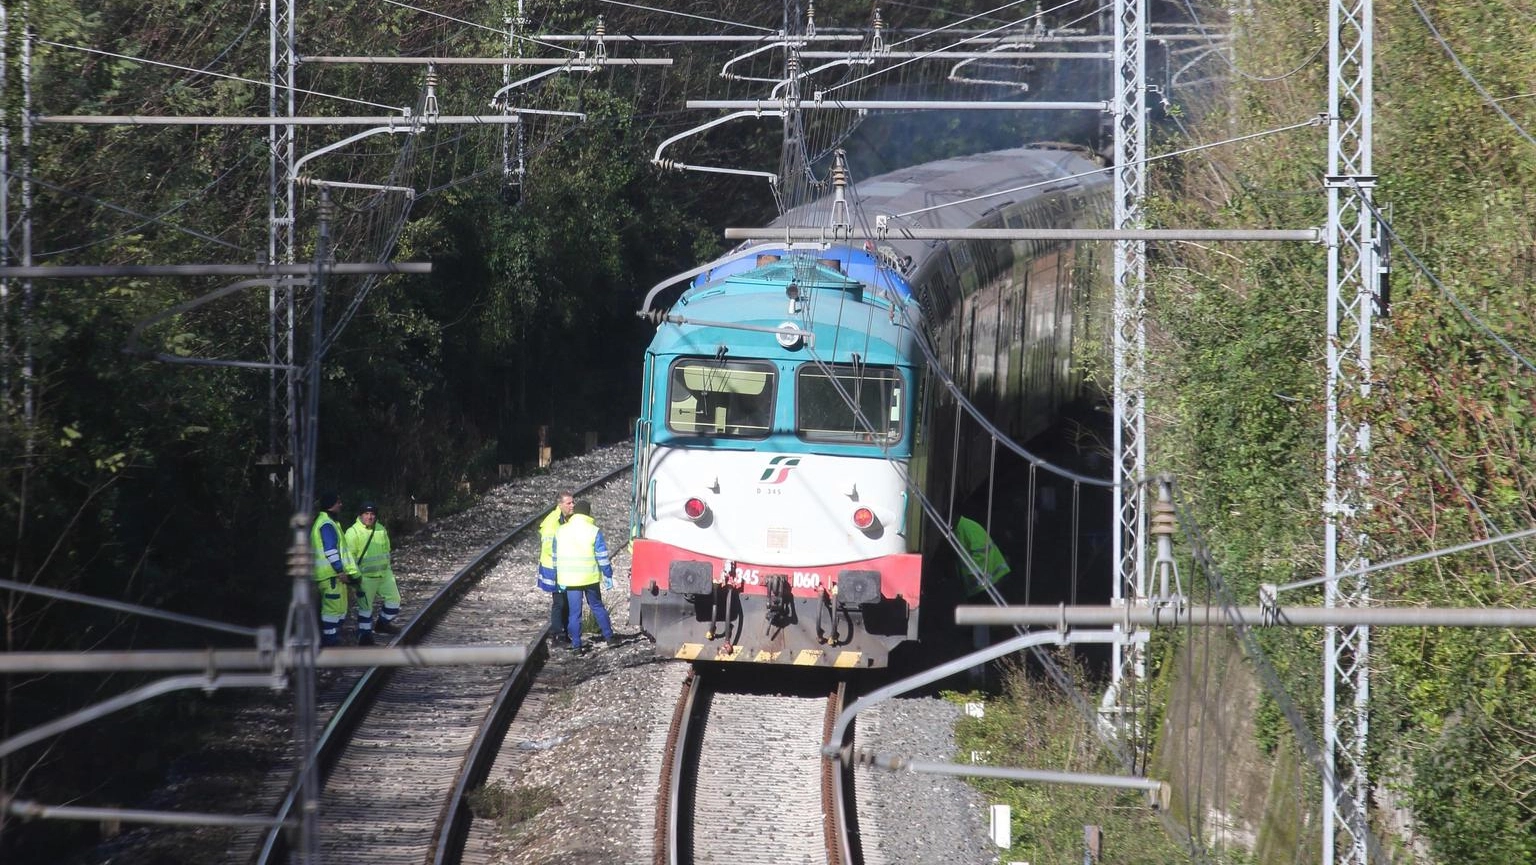 Per il maltempo sospesa circolazione treni fra Vicenza e Padova